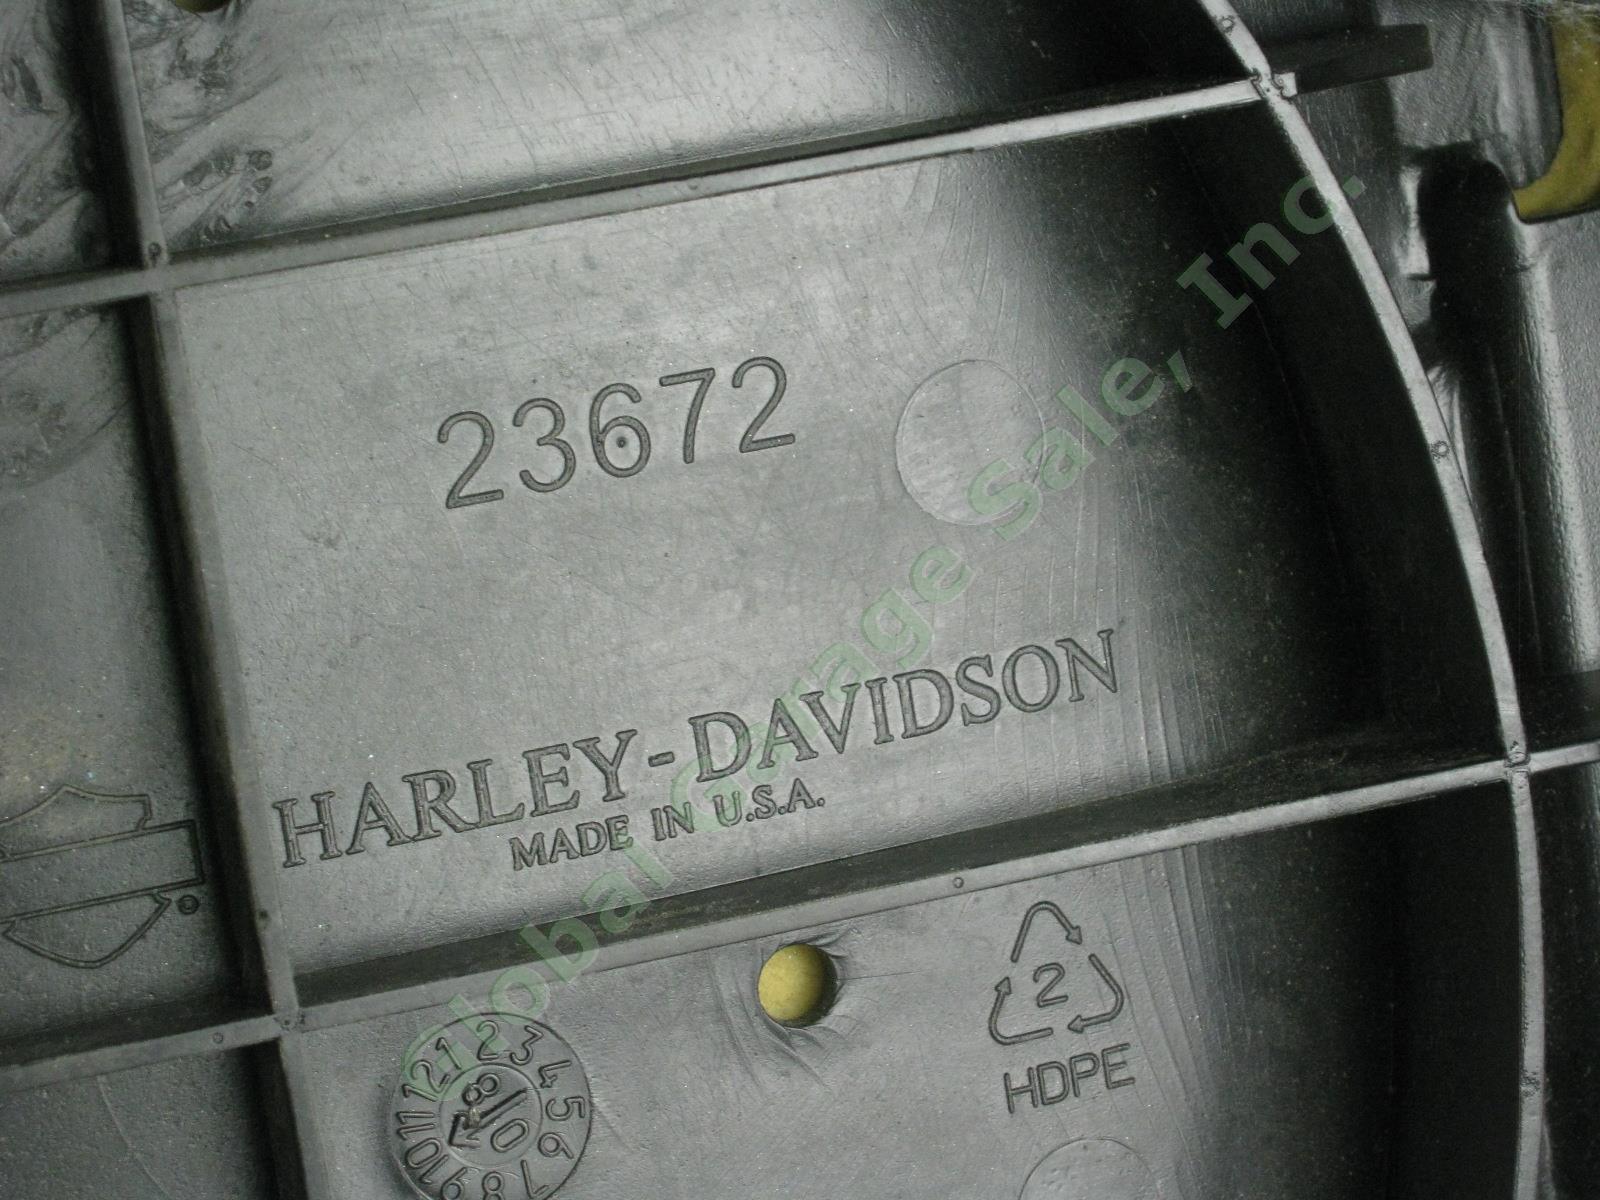 Harley Davidson Sundowner Basketweave Road King Touring Seat 23672 Exc Cond! NR! 7